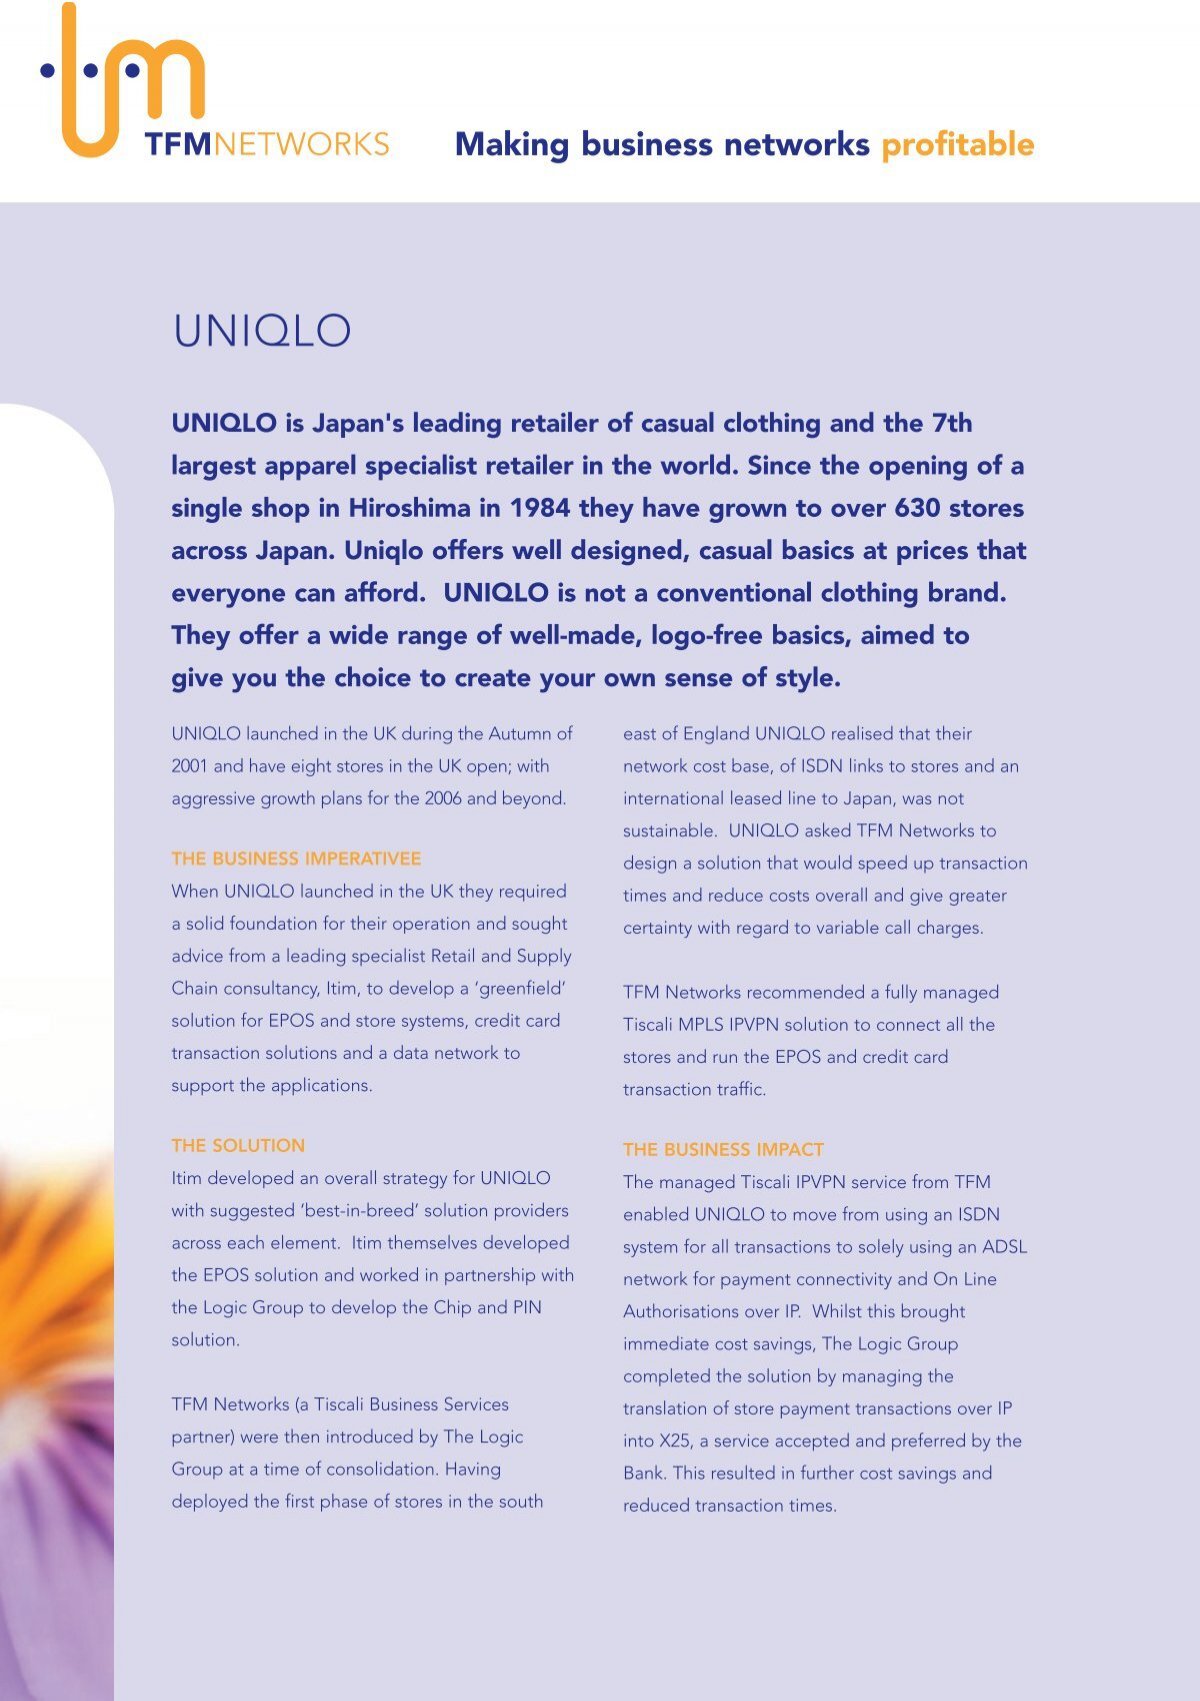 uniqlo case study pdf